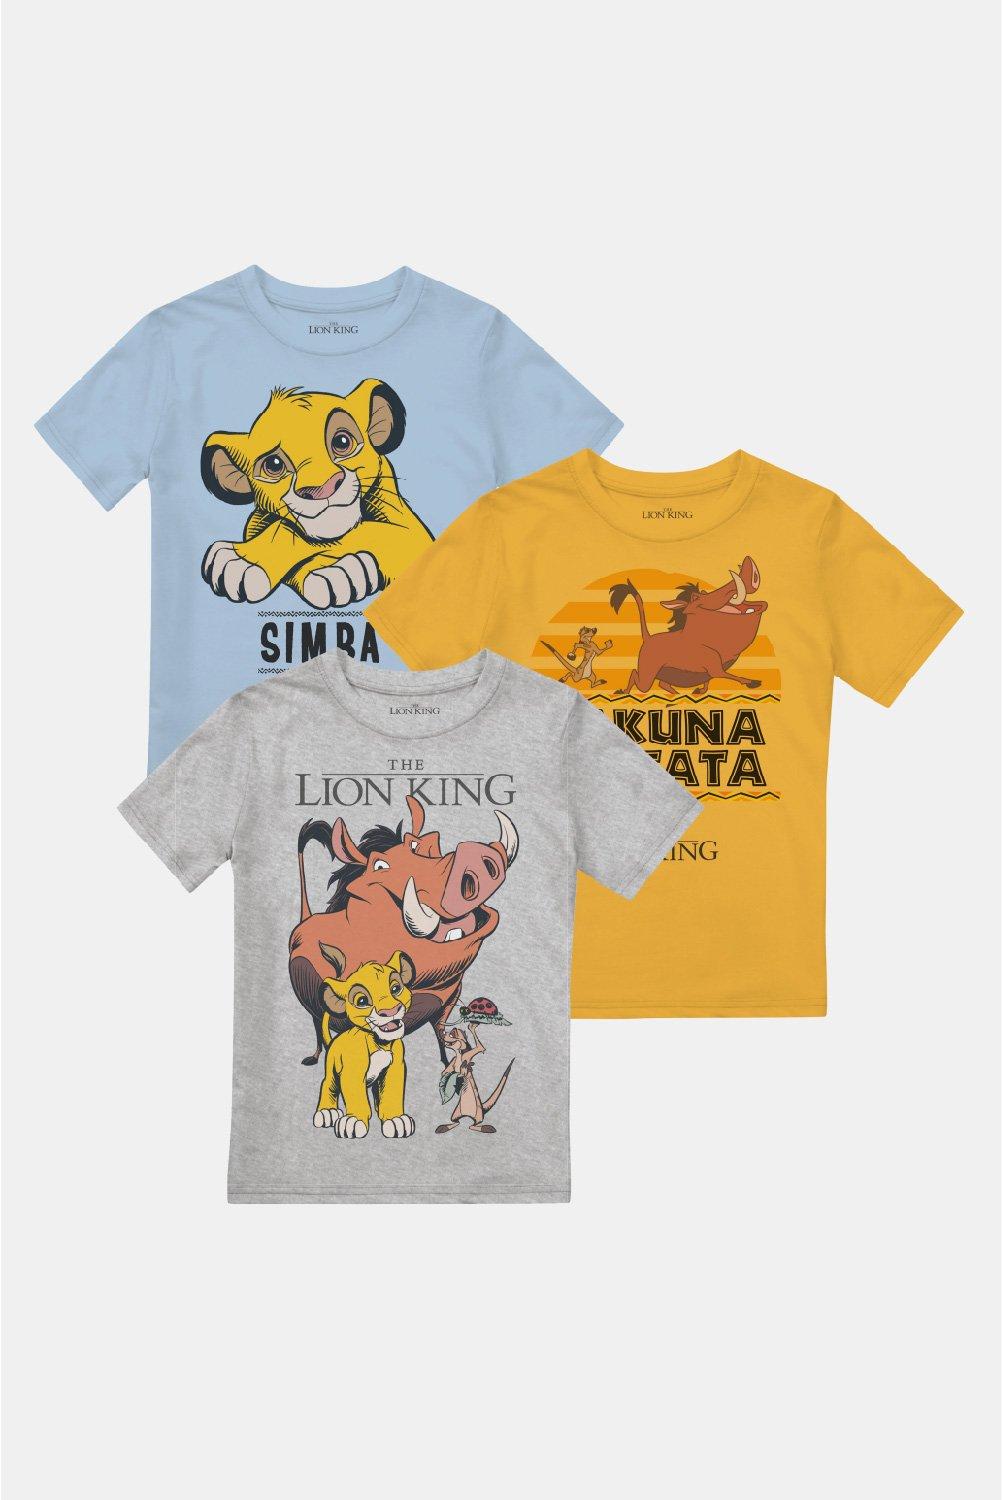 Комплект футболок для мальчиков «Король Лев Симба, Тимон и Пумба», 3 шт. Disney, мультиколор